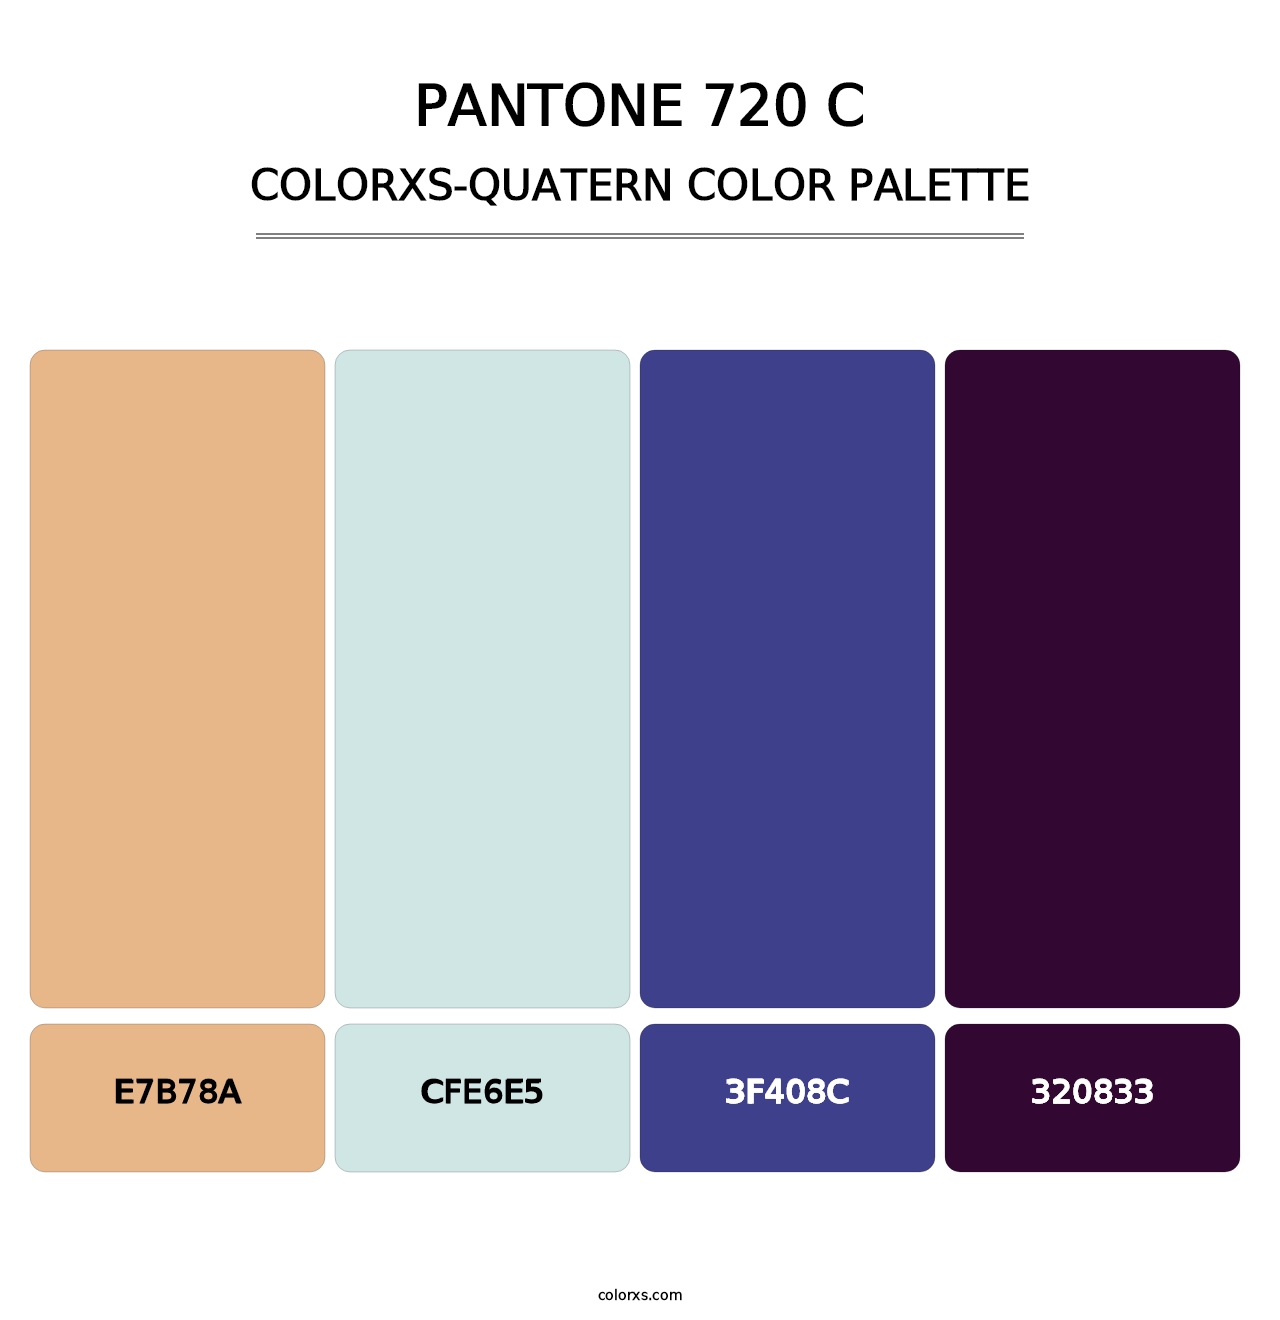 PANTONE 720 C - Colorxs Quatern Palette